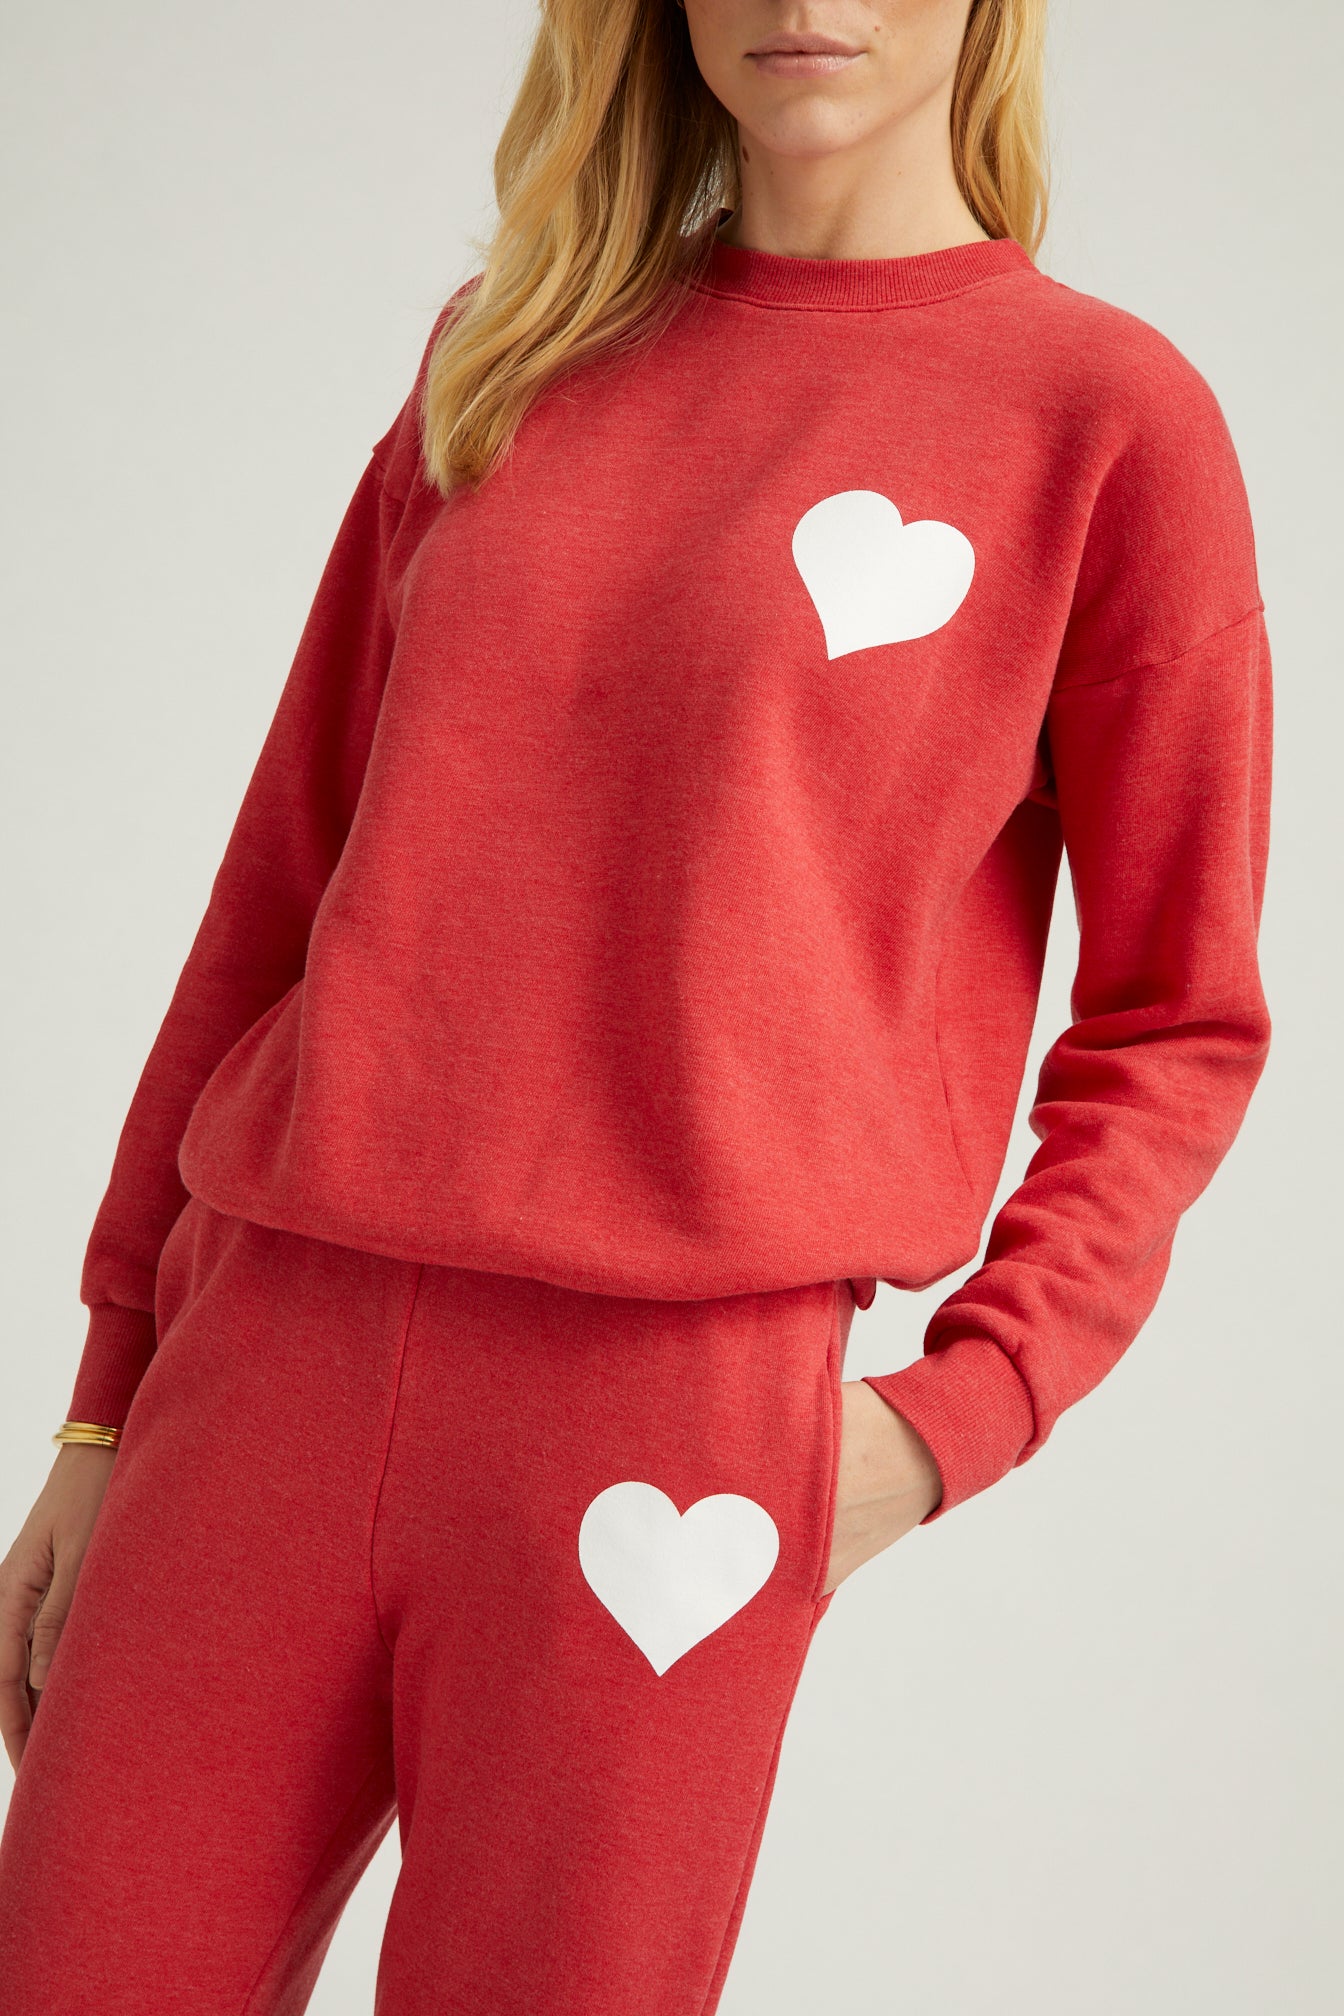 Red Heart Crewneck Sweatshirt